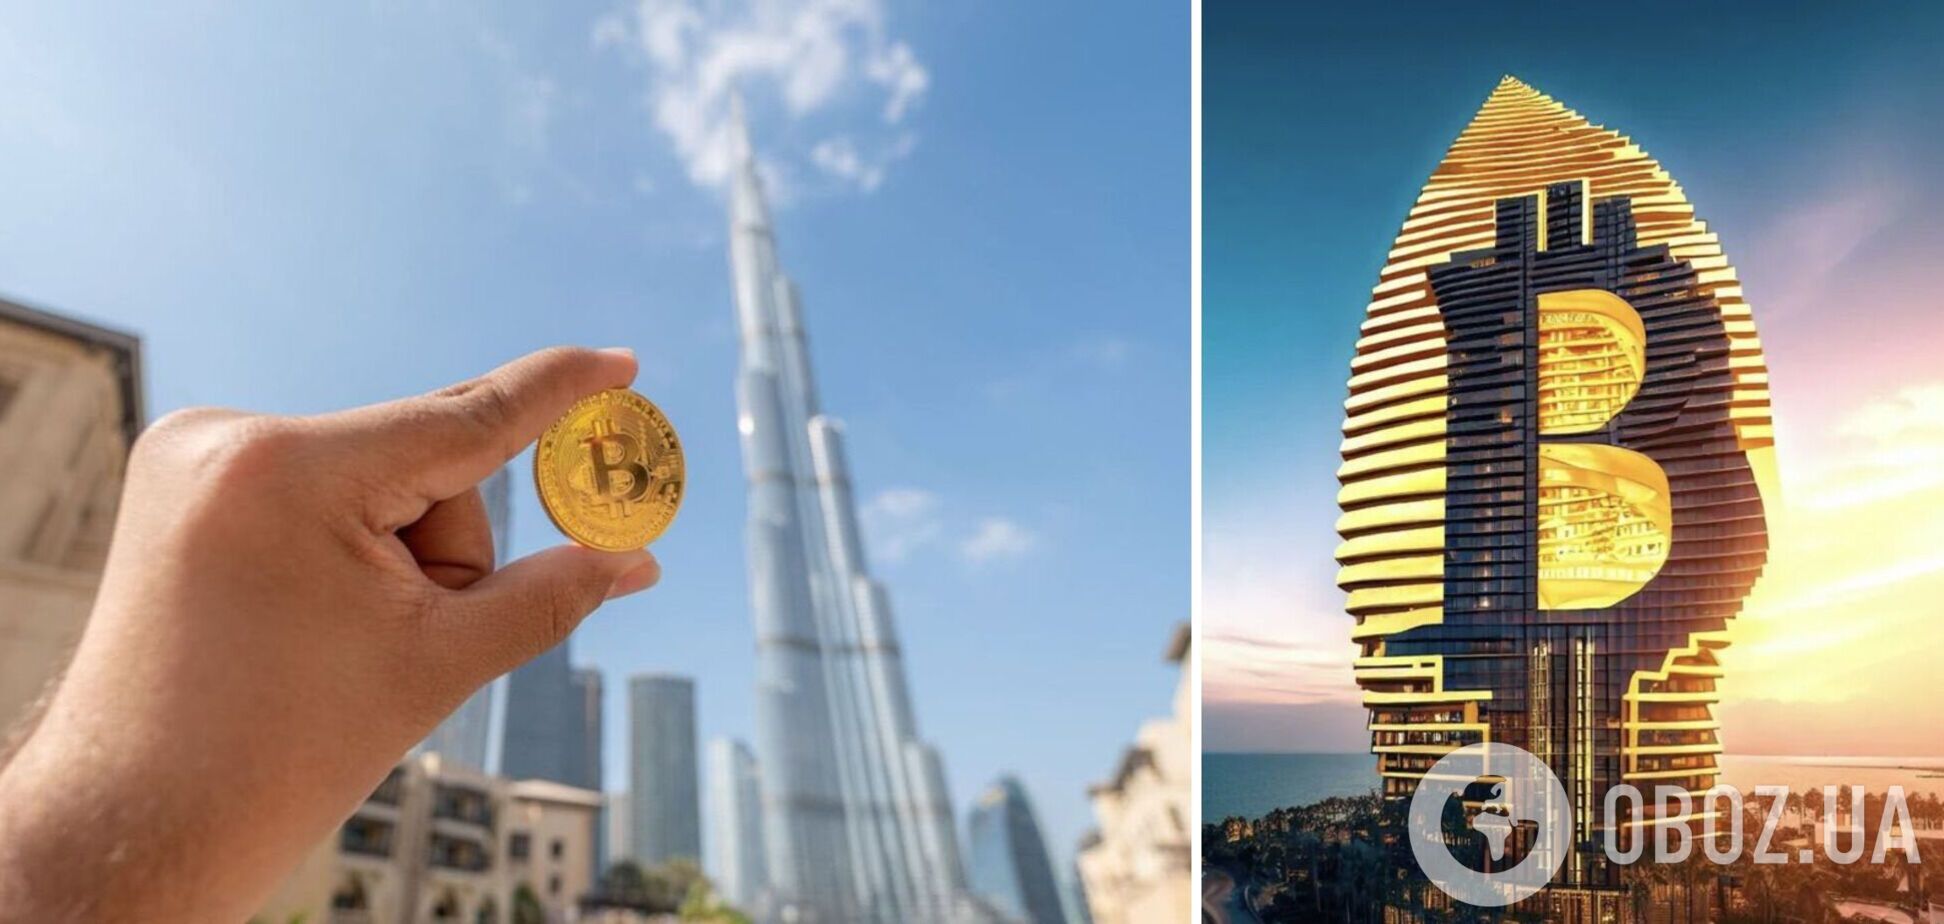 Отель в биткоин-стиле появится в Дубае